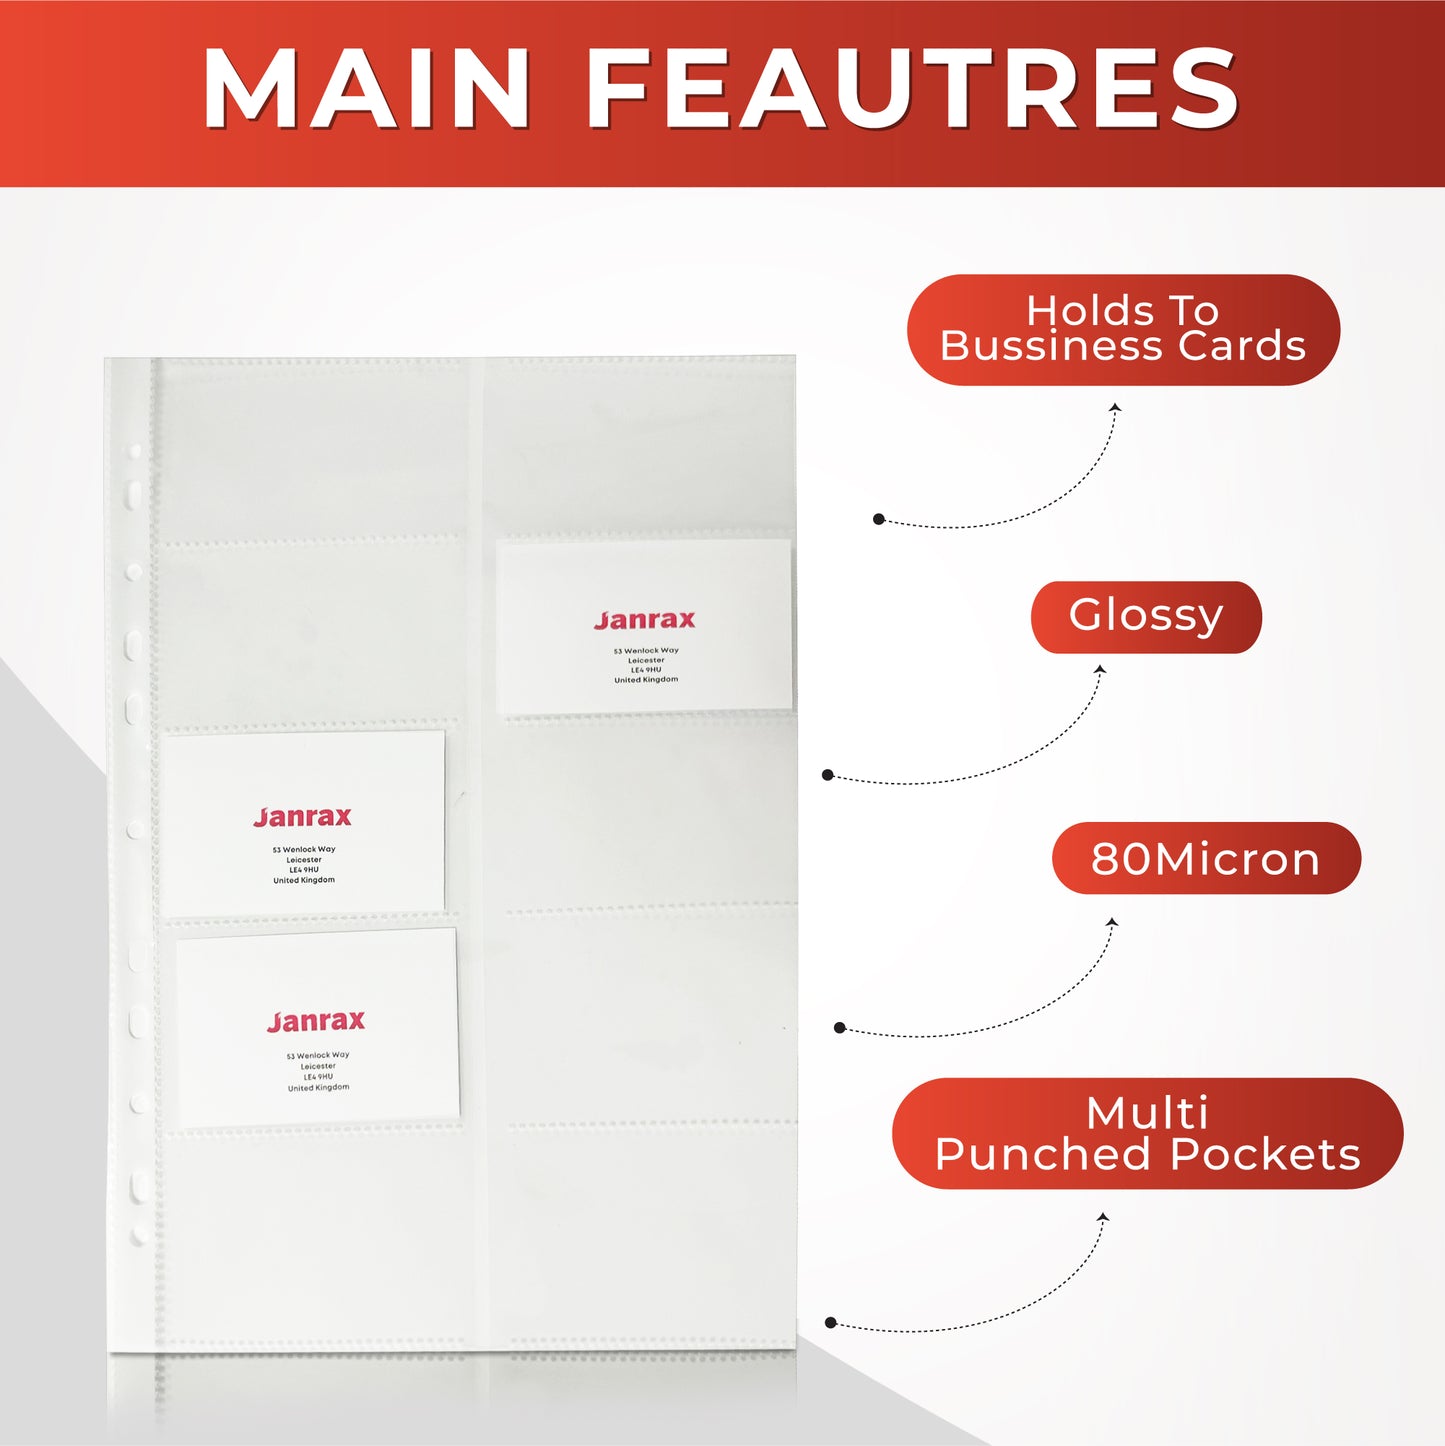 Business Card Ring Binder Folder for 400 Business Cards